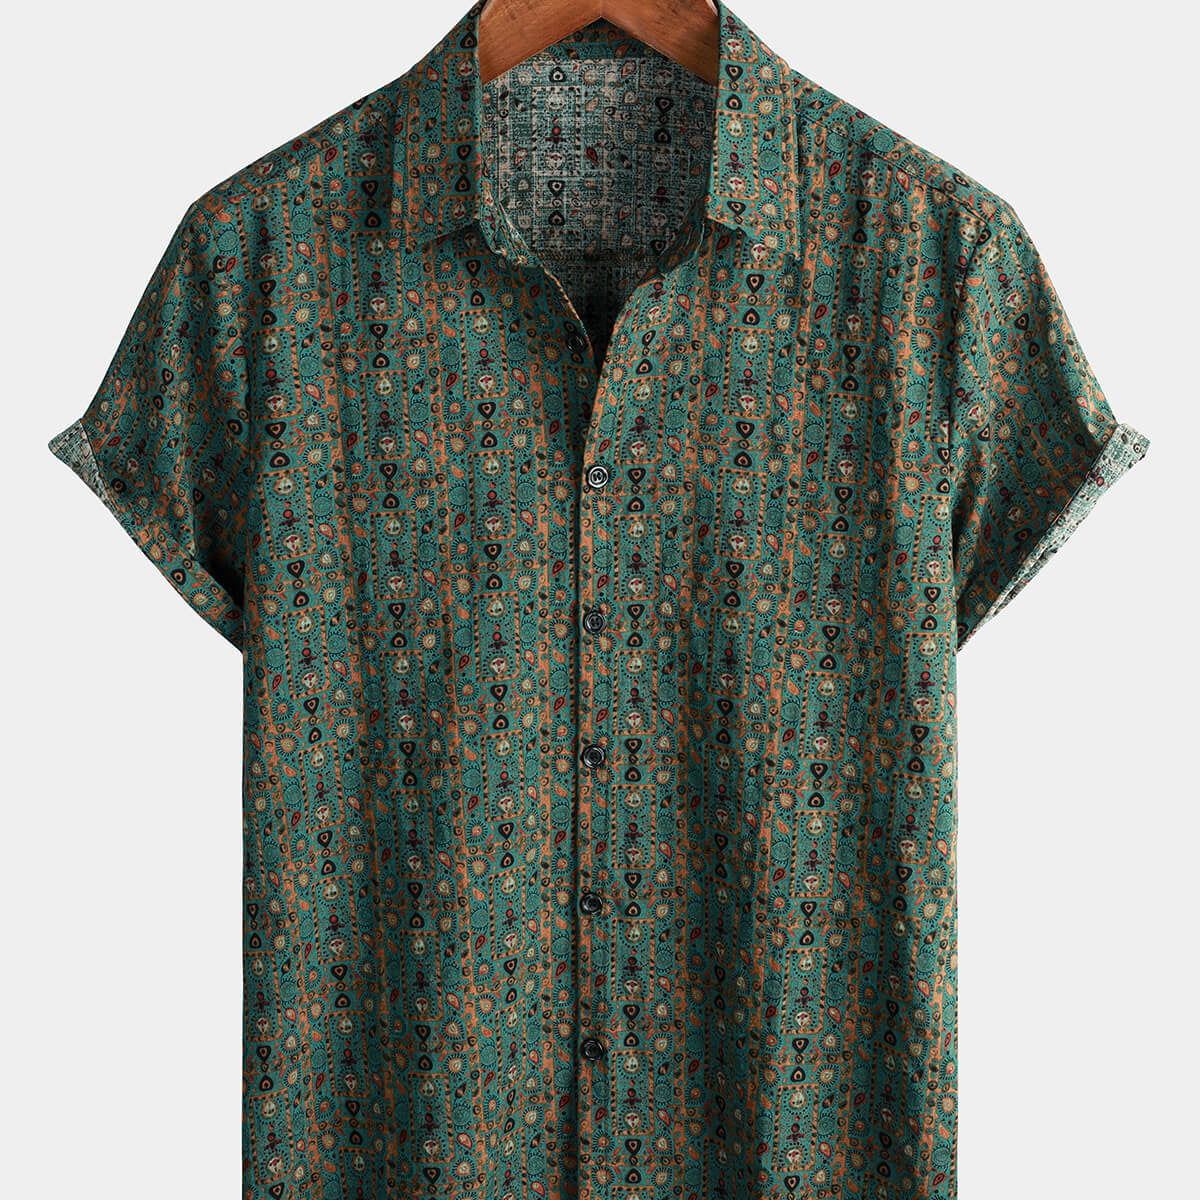 Camisa de manga corta tribal retro boho verde con botones y estampado de cachemira vintage de los años 70 para hombre